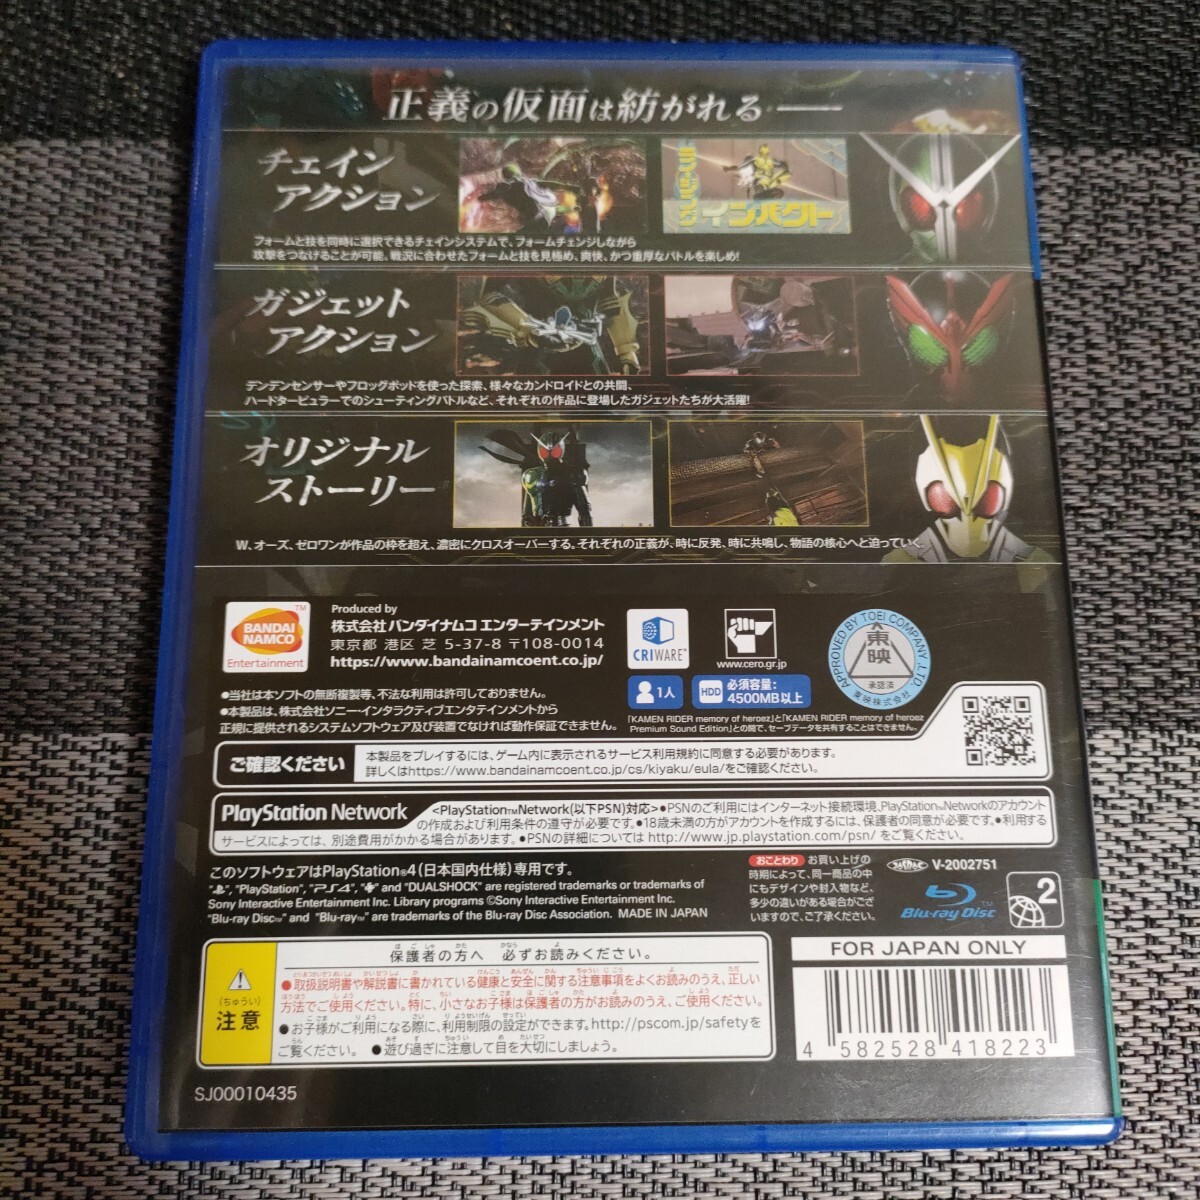 【PS4】 KAMENRIDER memory of heroez [通常版] 仮面ライダー メモリー オブ ヒーローズ